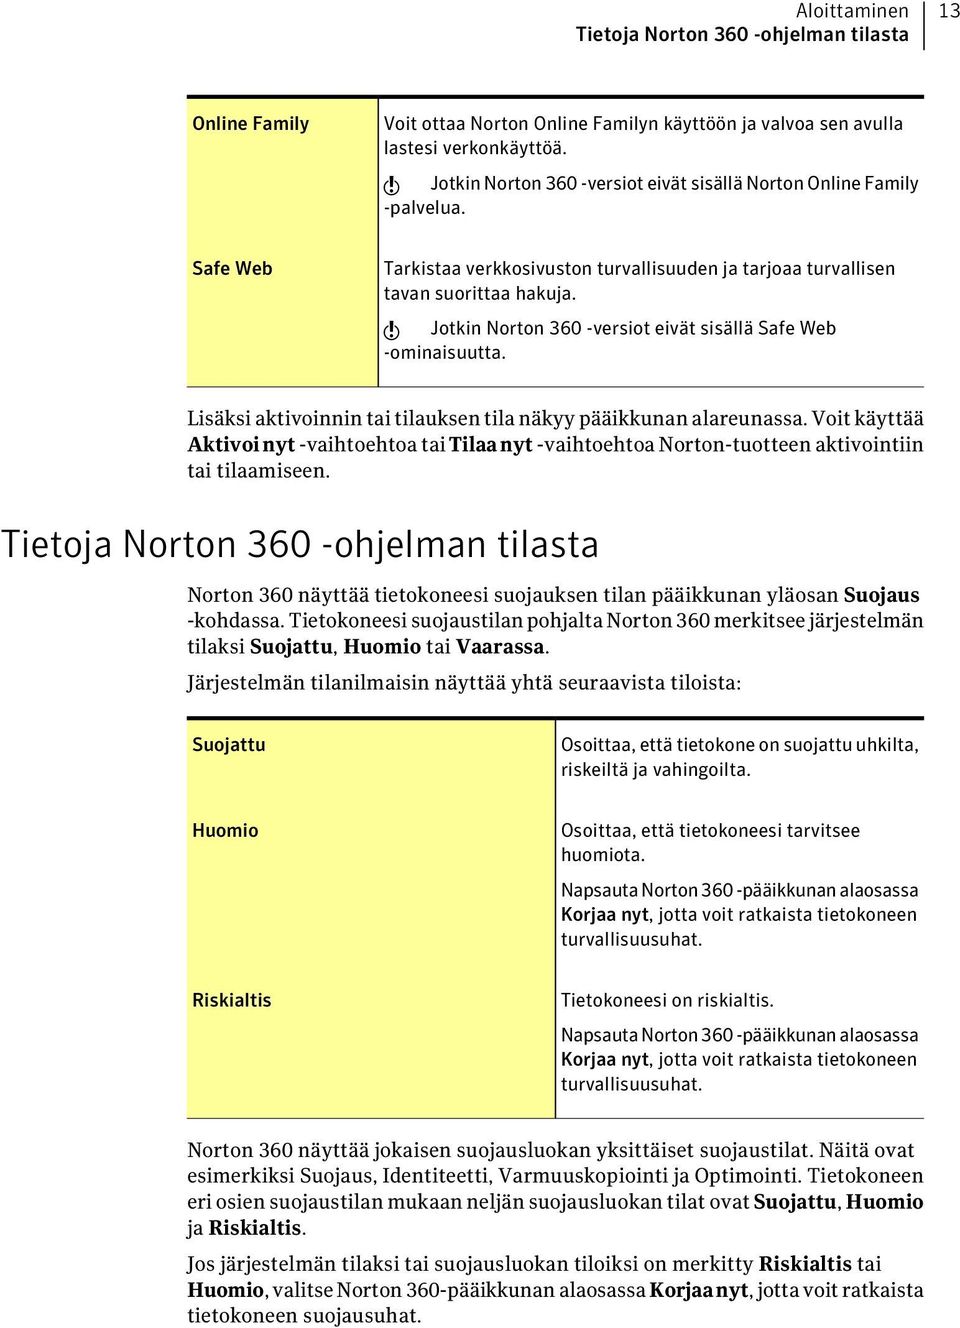 w Jotkin Norton 360 -versiot eivät sisällä Safe Web -ominaisuutta. Lisäksi aktivoinnin tai tilauksen tila näkyy pääikkunan alareunassa.